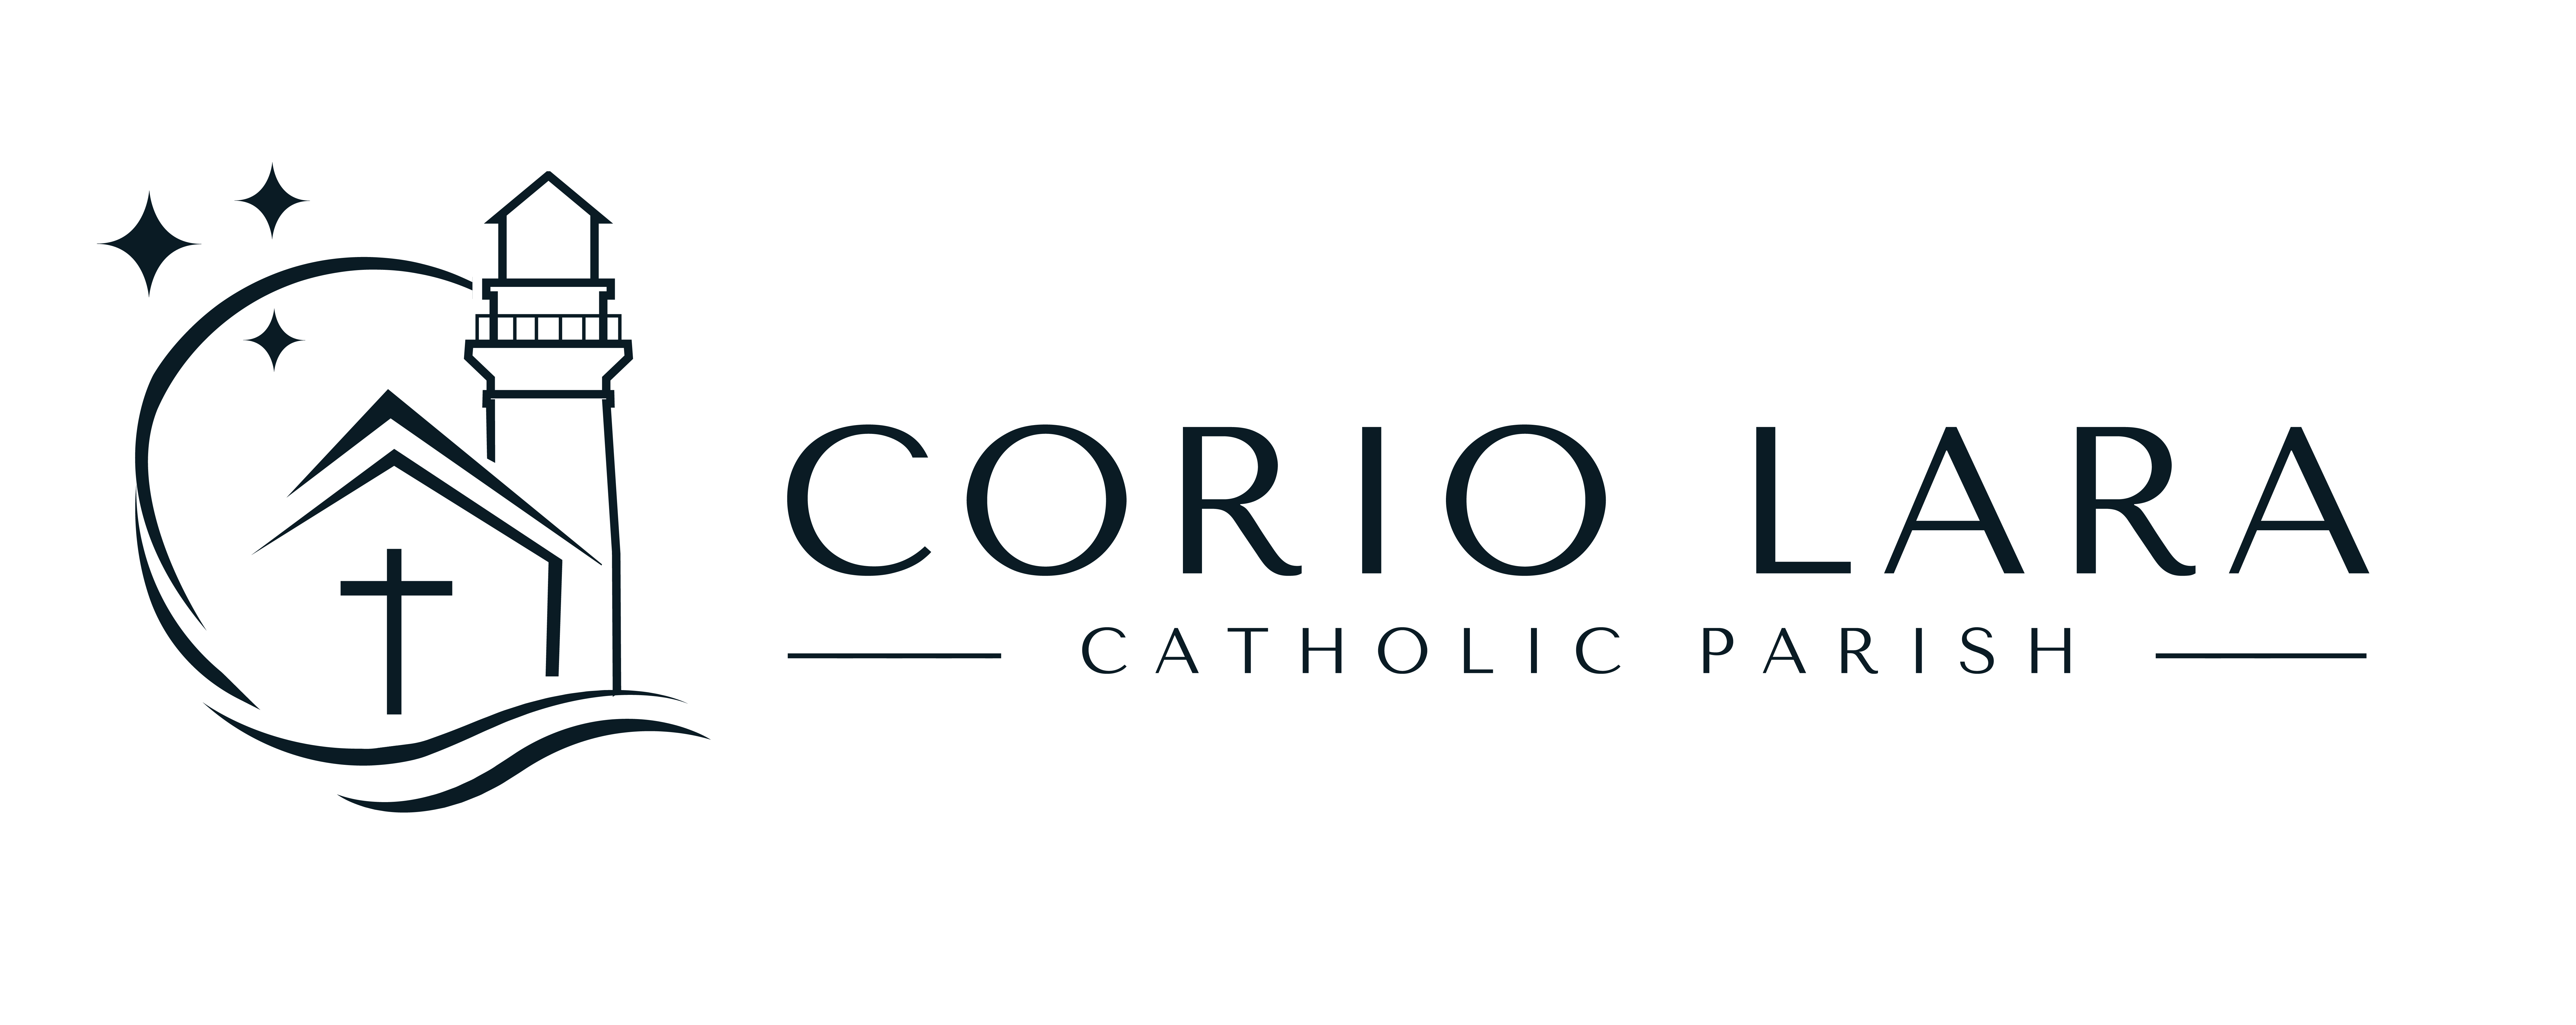 Corio Lara Catholic Parish